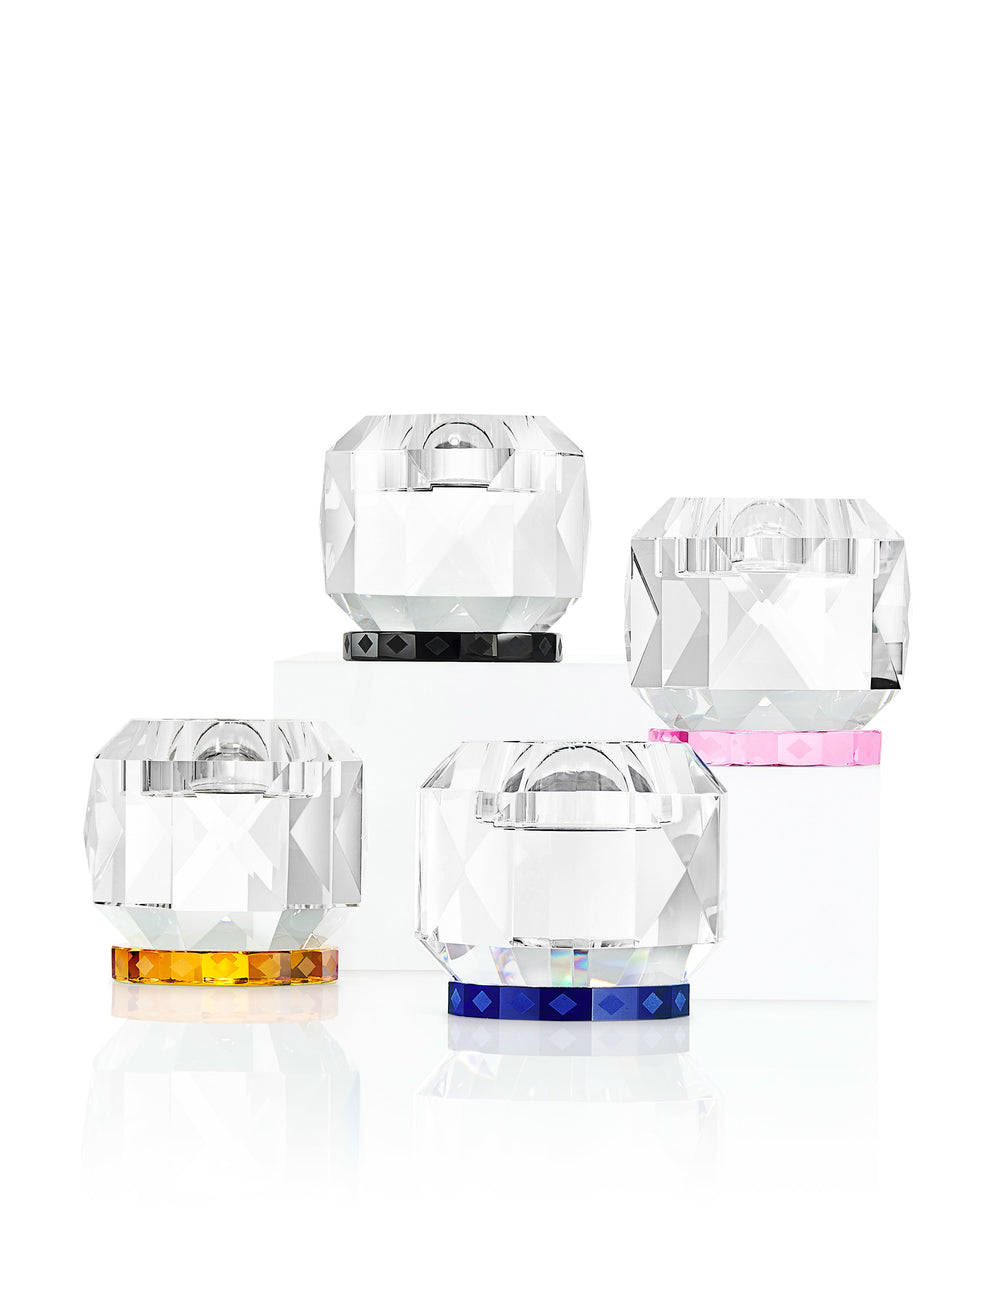 Fire fyrfadslysestager i klart og farvet krystal, på hvid baggrund.